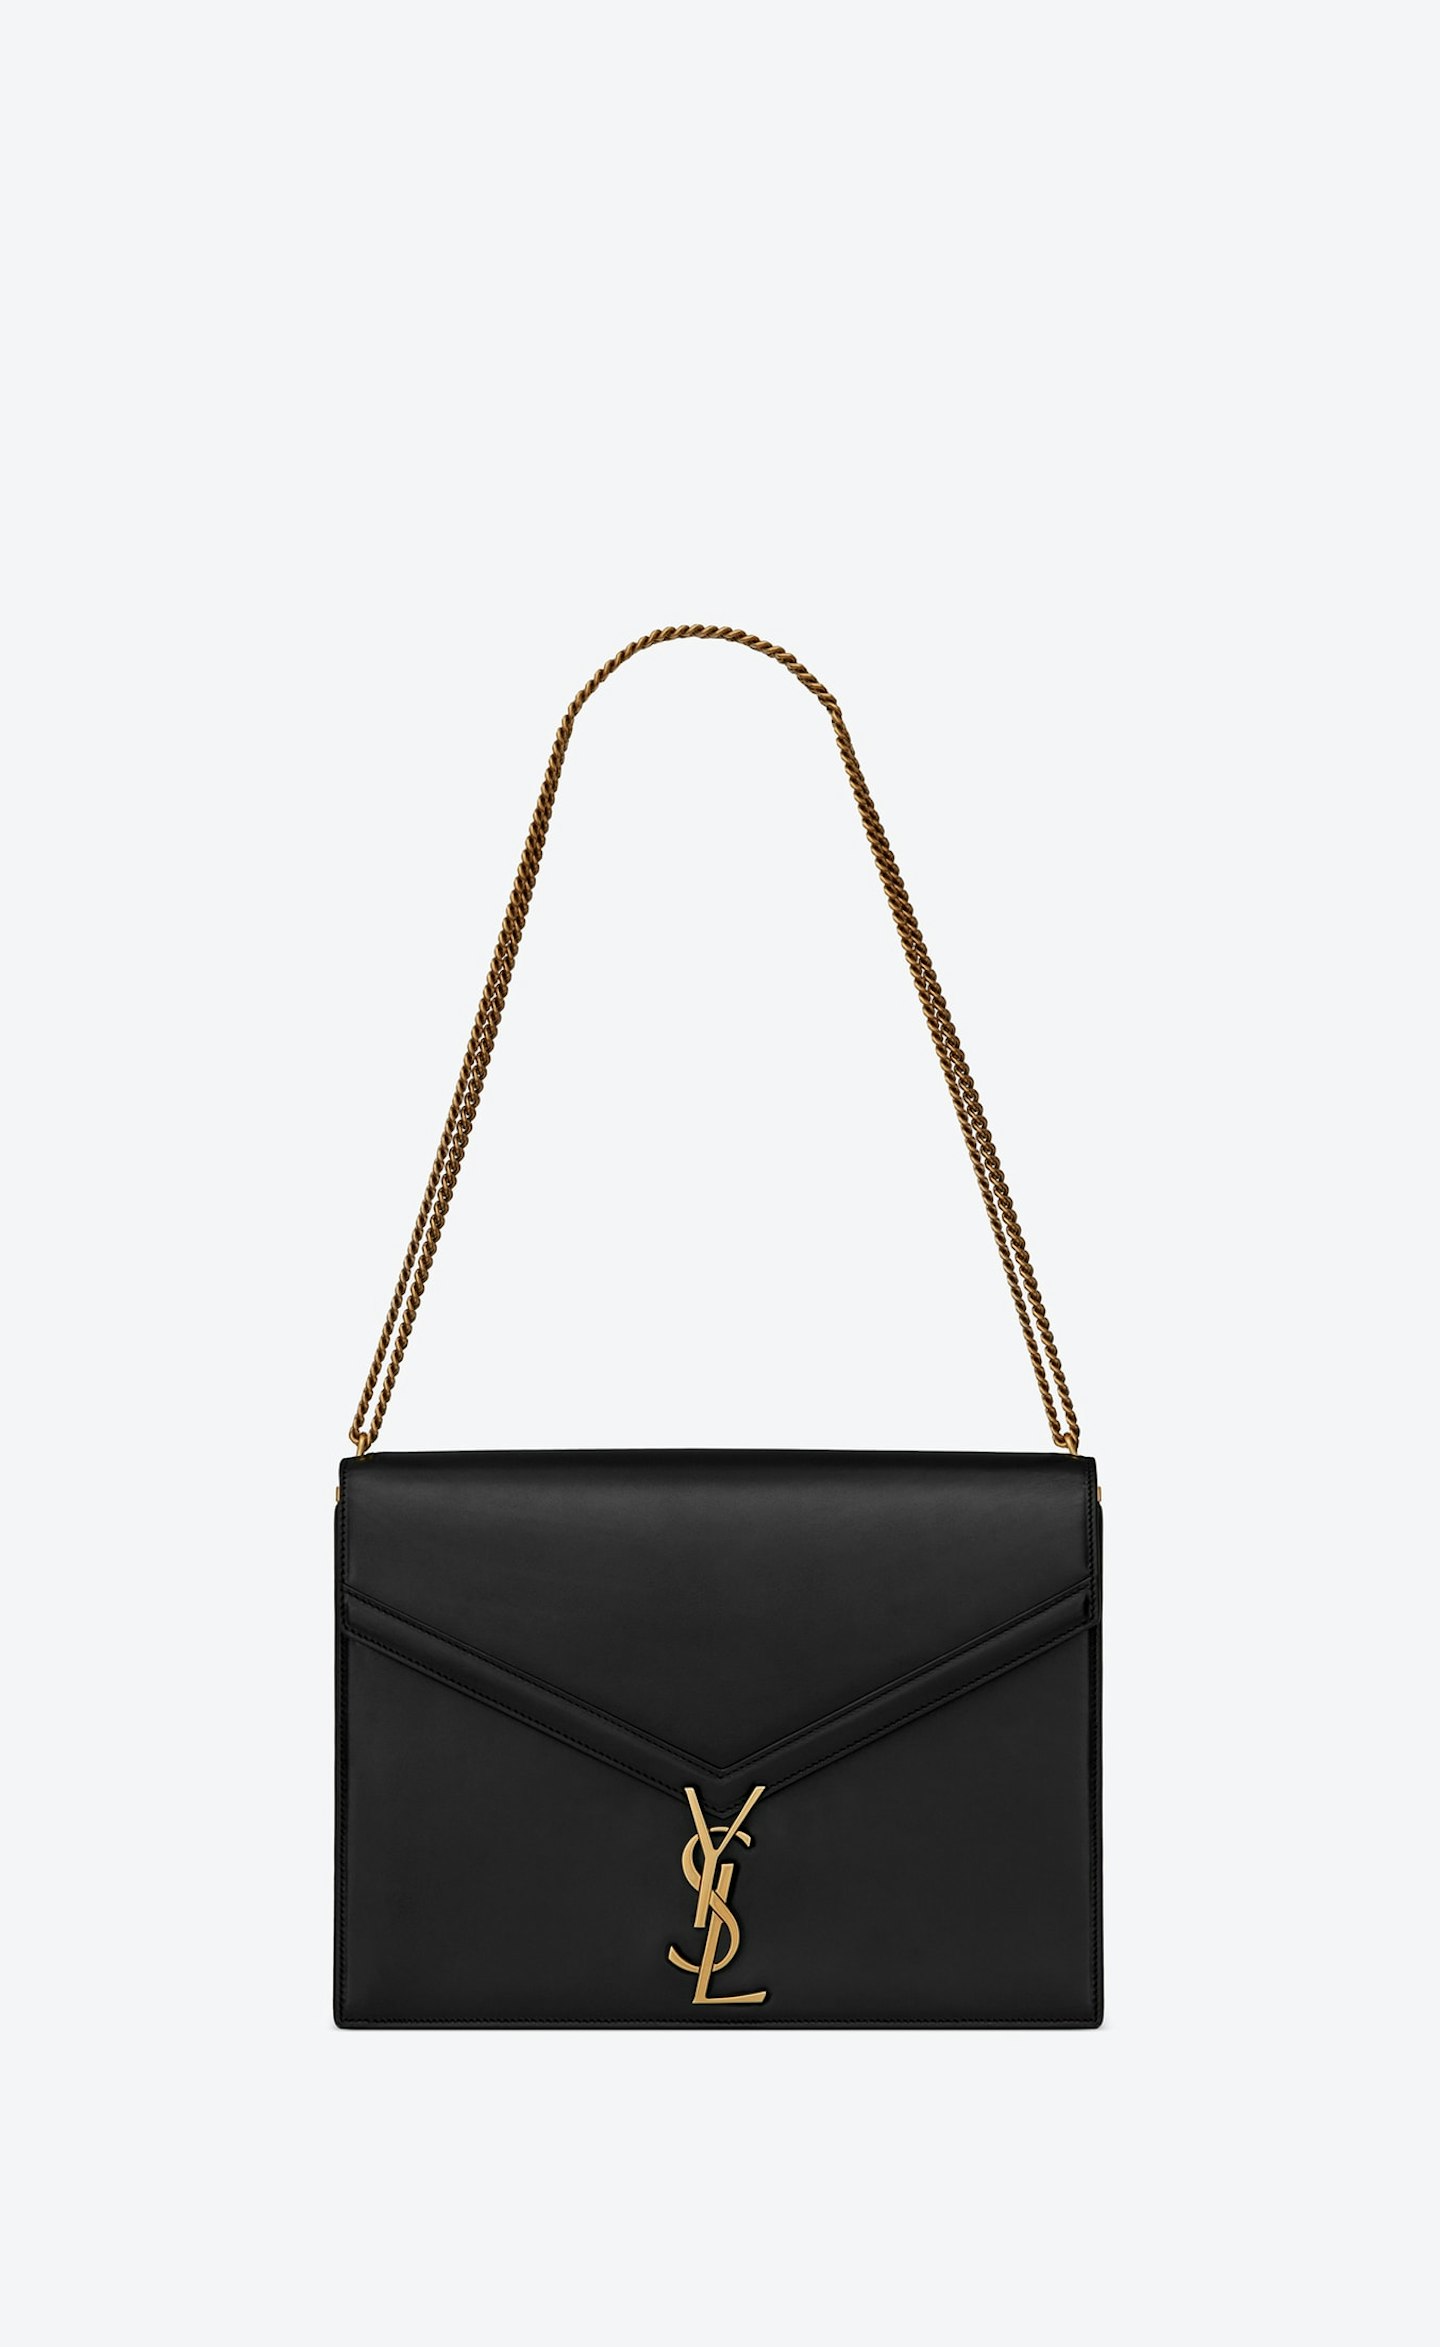 Saint Laurent, Cassandra Large Bag, £1,895